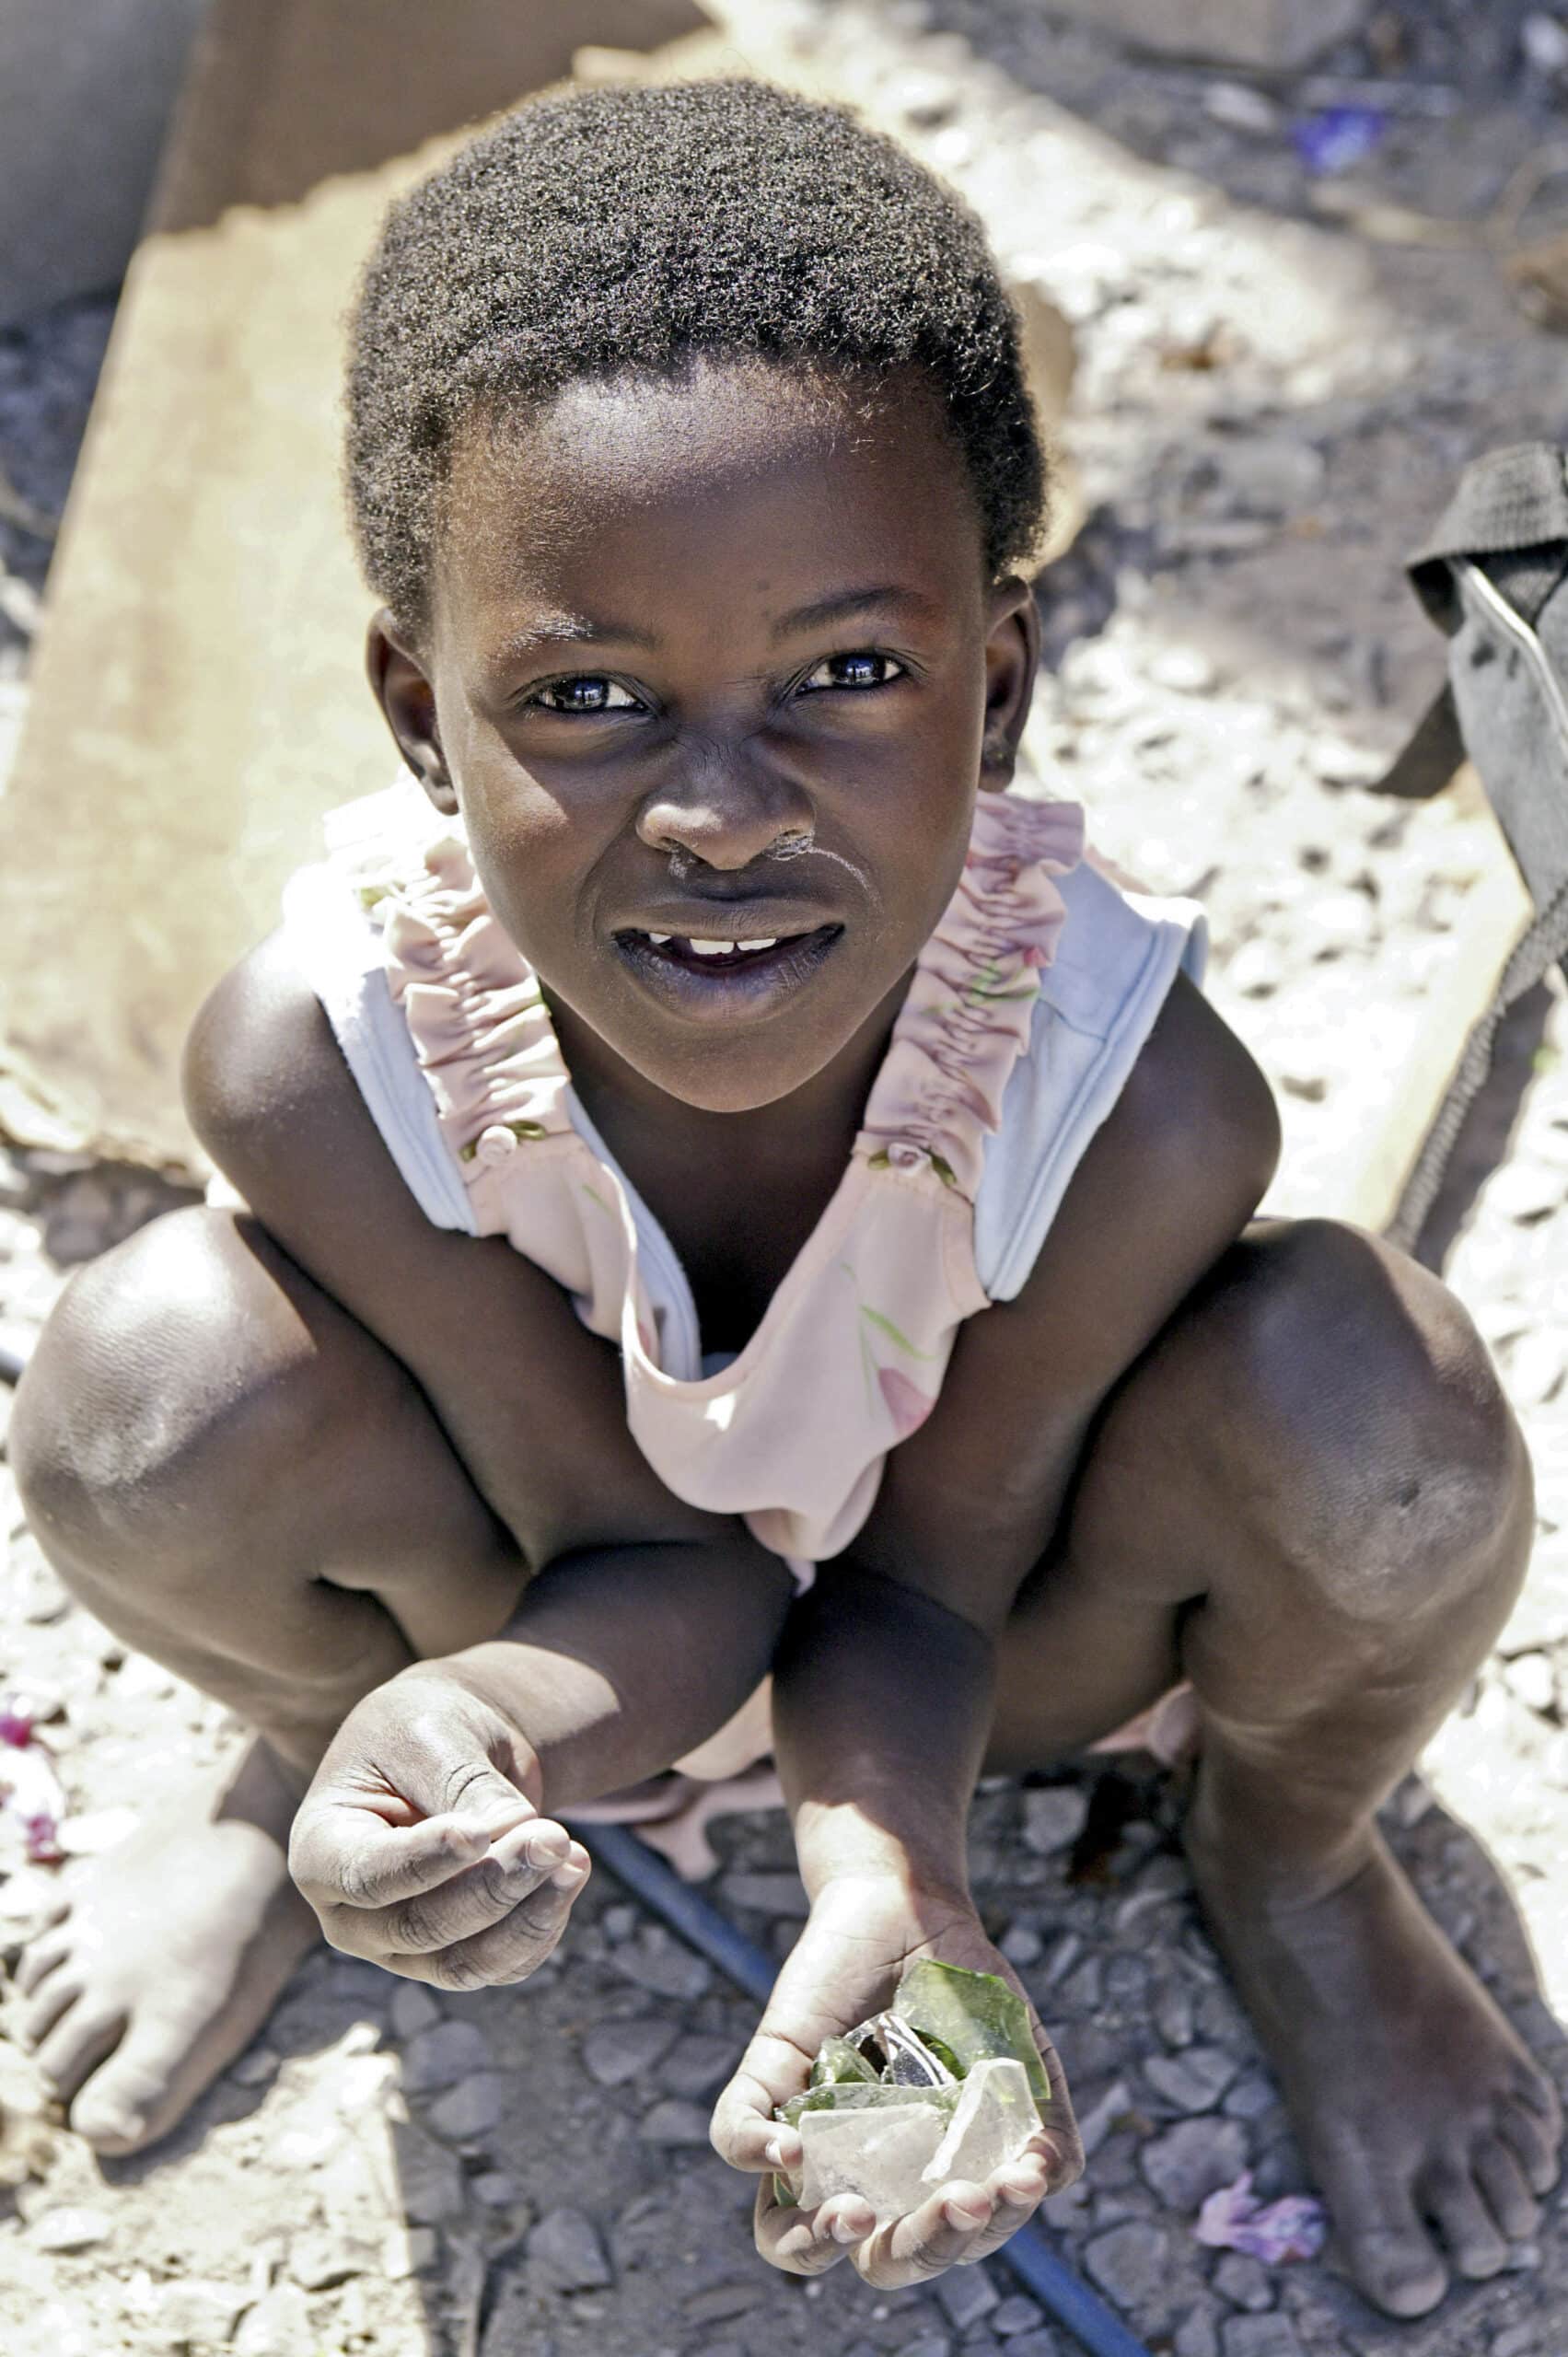 Ein kleines Kind mit kurzen Haaren und einem hellrosa Kleid hockt auf dem Boden und hält einen kleinen Gegenstand. Der Hintergrund zeigt einen sandigen und steinigen Untergrund. © Fotografie Tomas Rodriguez